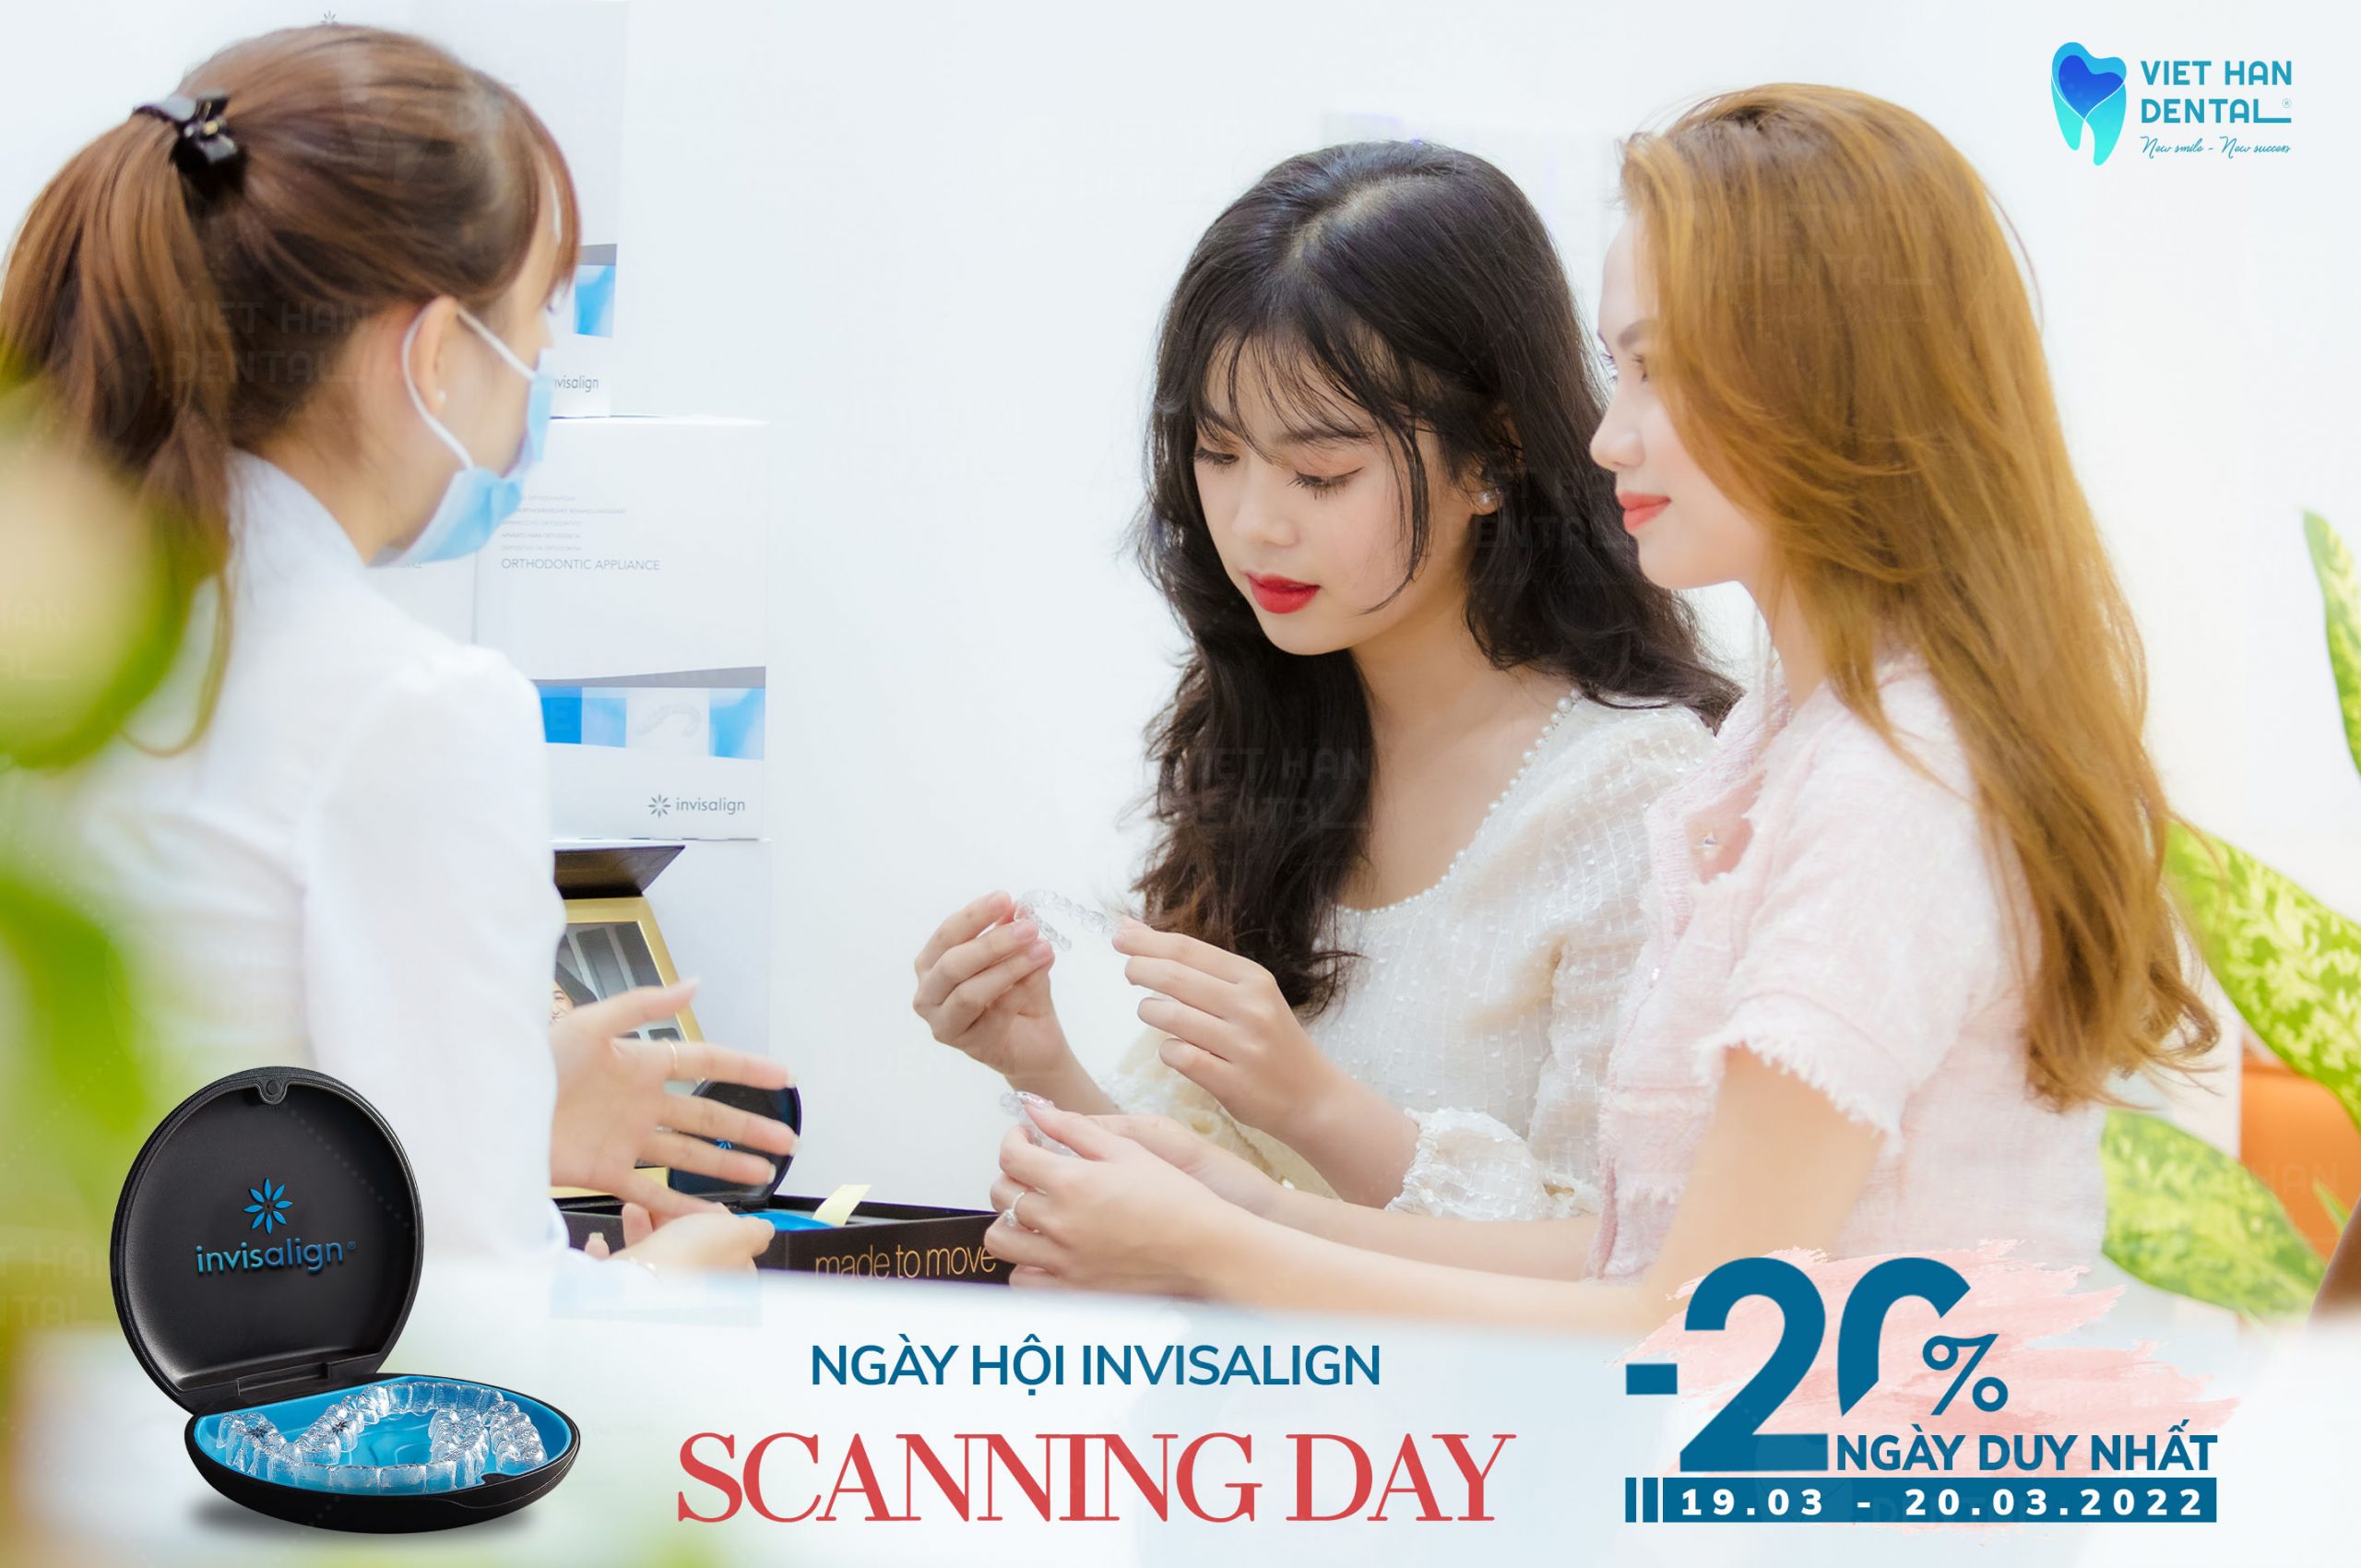 Ngày hội Invisalign scan day tại Nha khoa Việt Hàn Nha Trang 